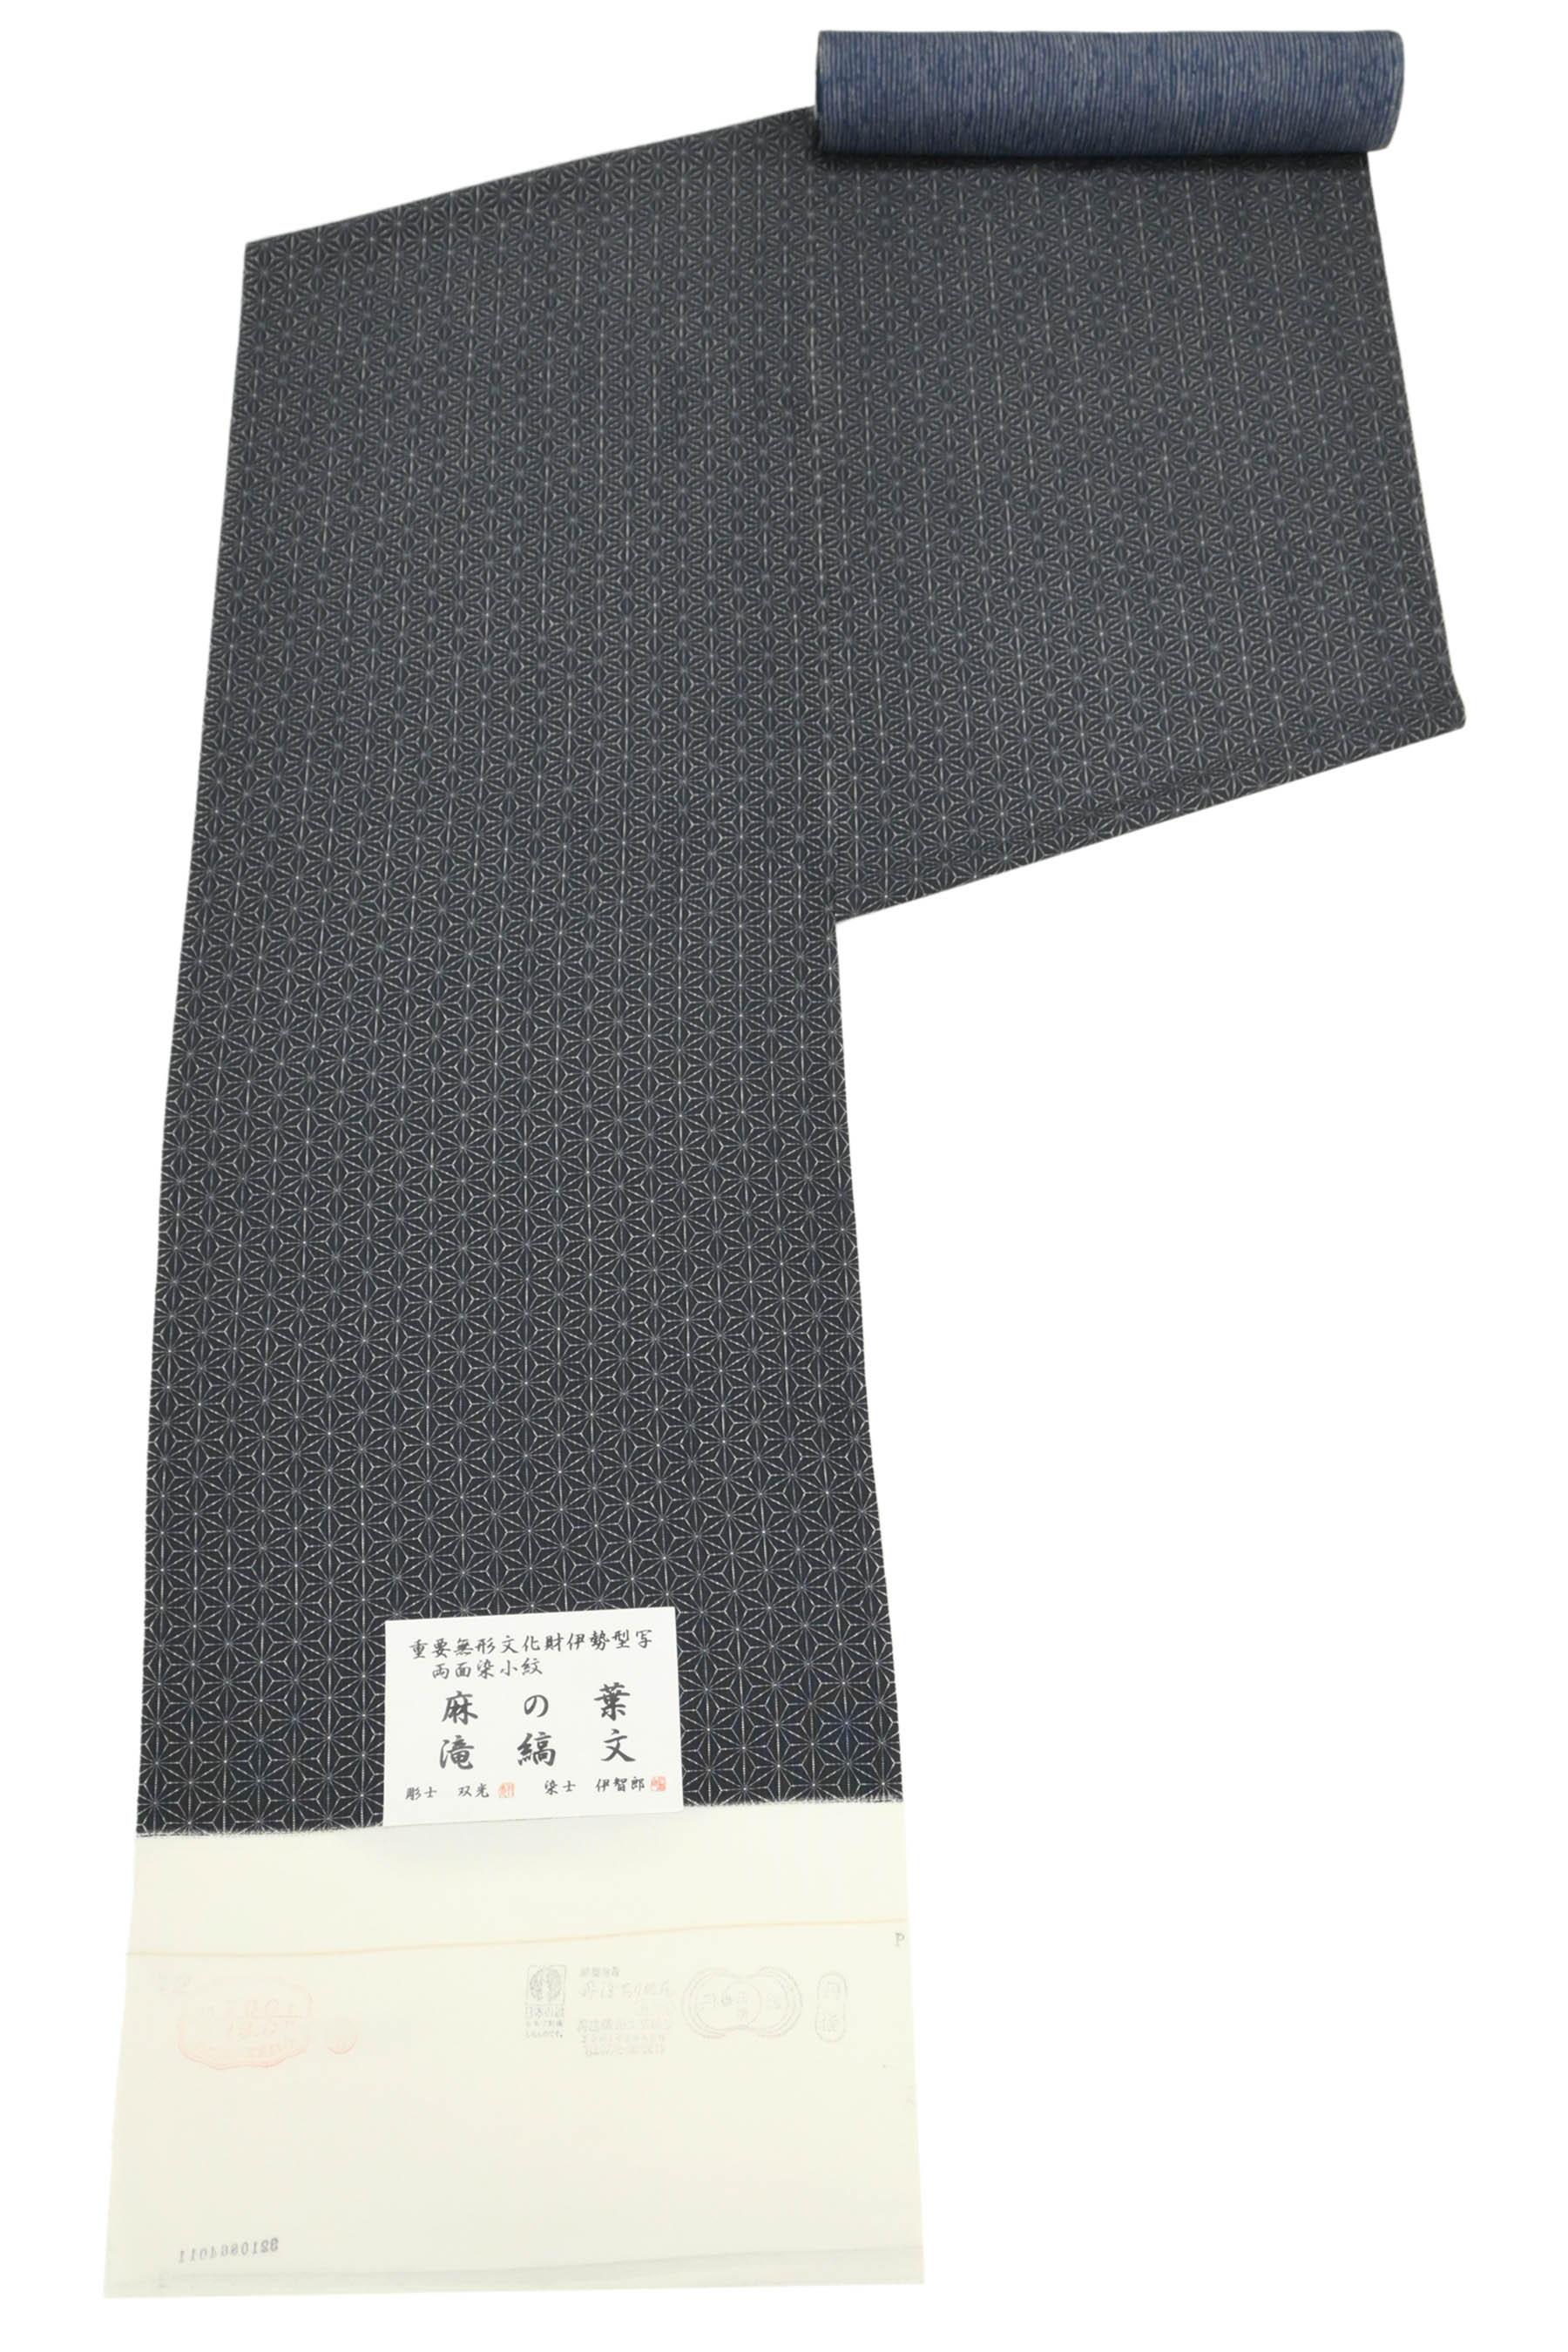 最新作格安専用帯174 87 二本セット高級 正絹 型染め 名古屋仕立て 名古屋帯 着物・浴衣